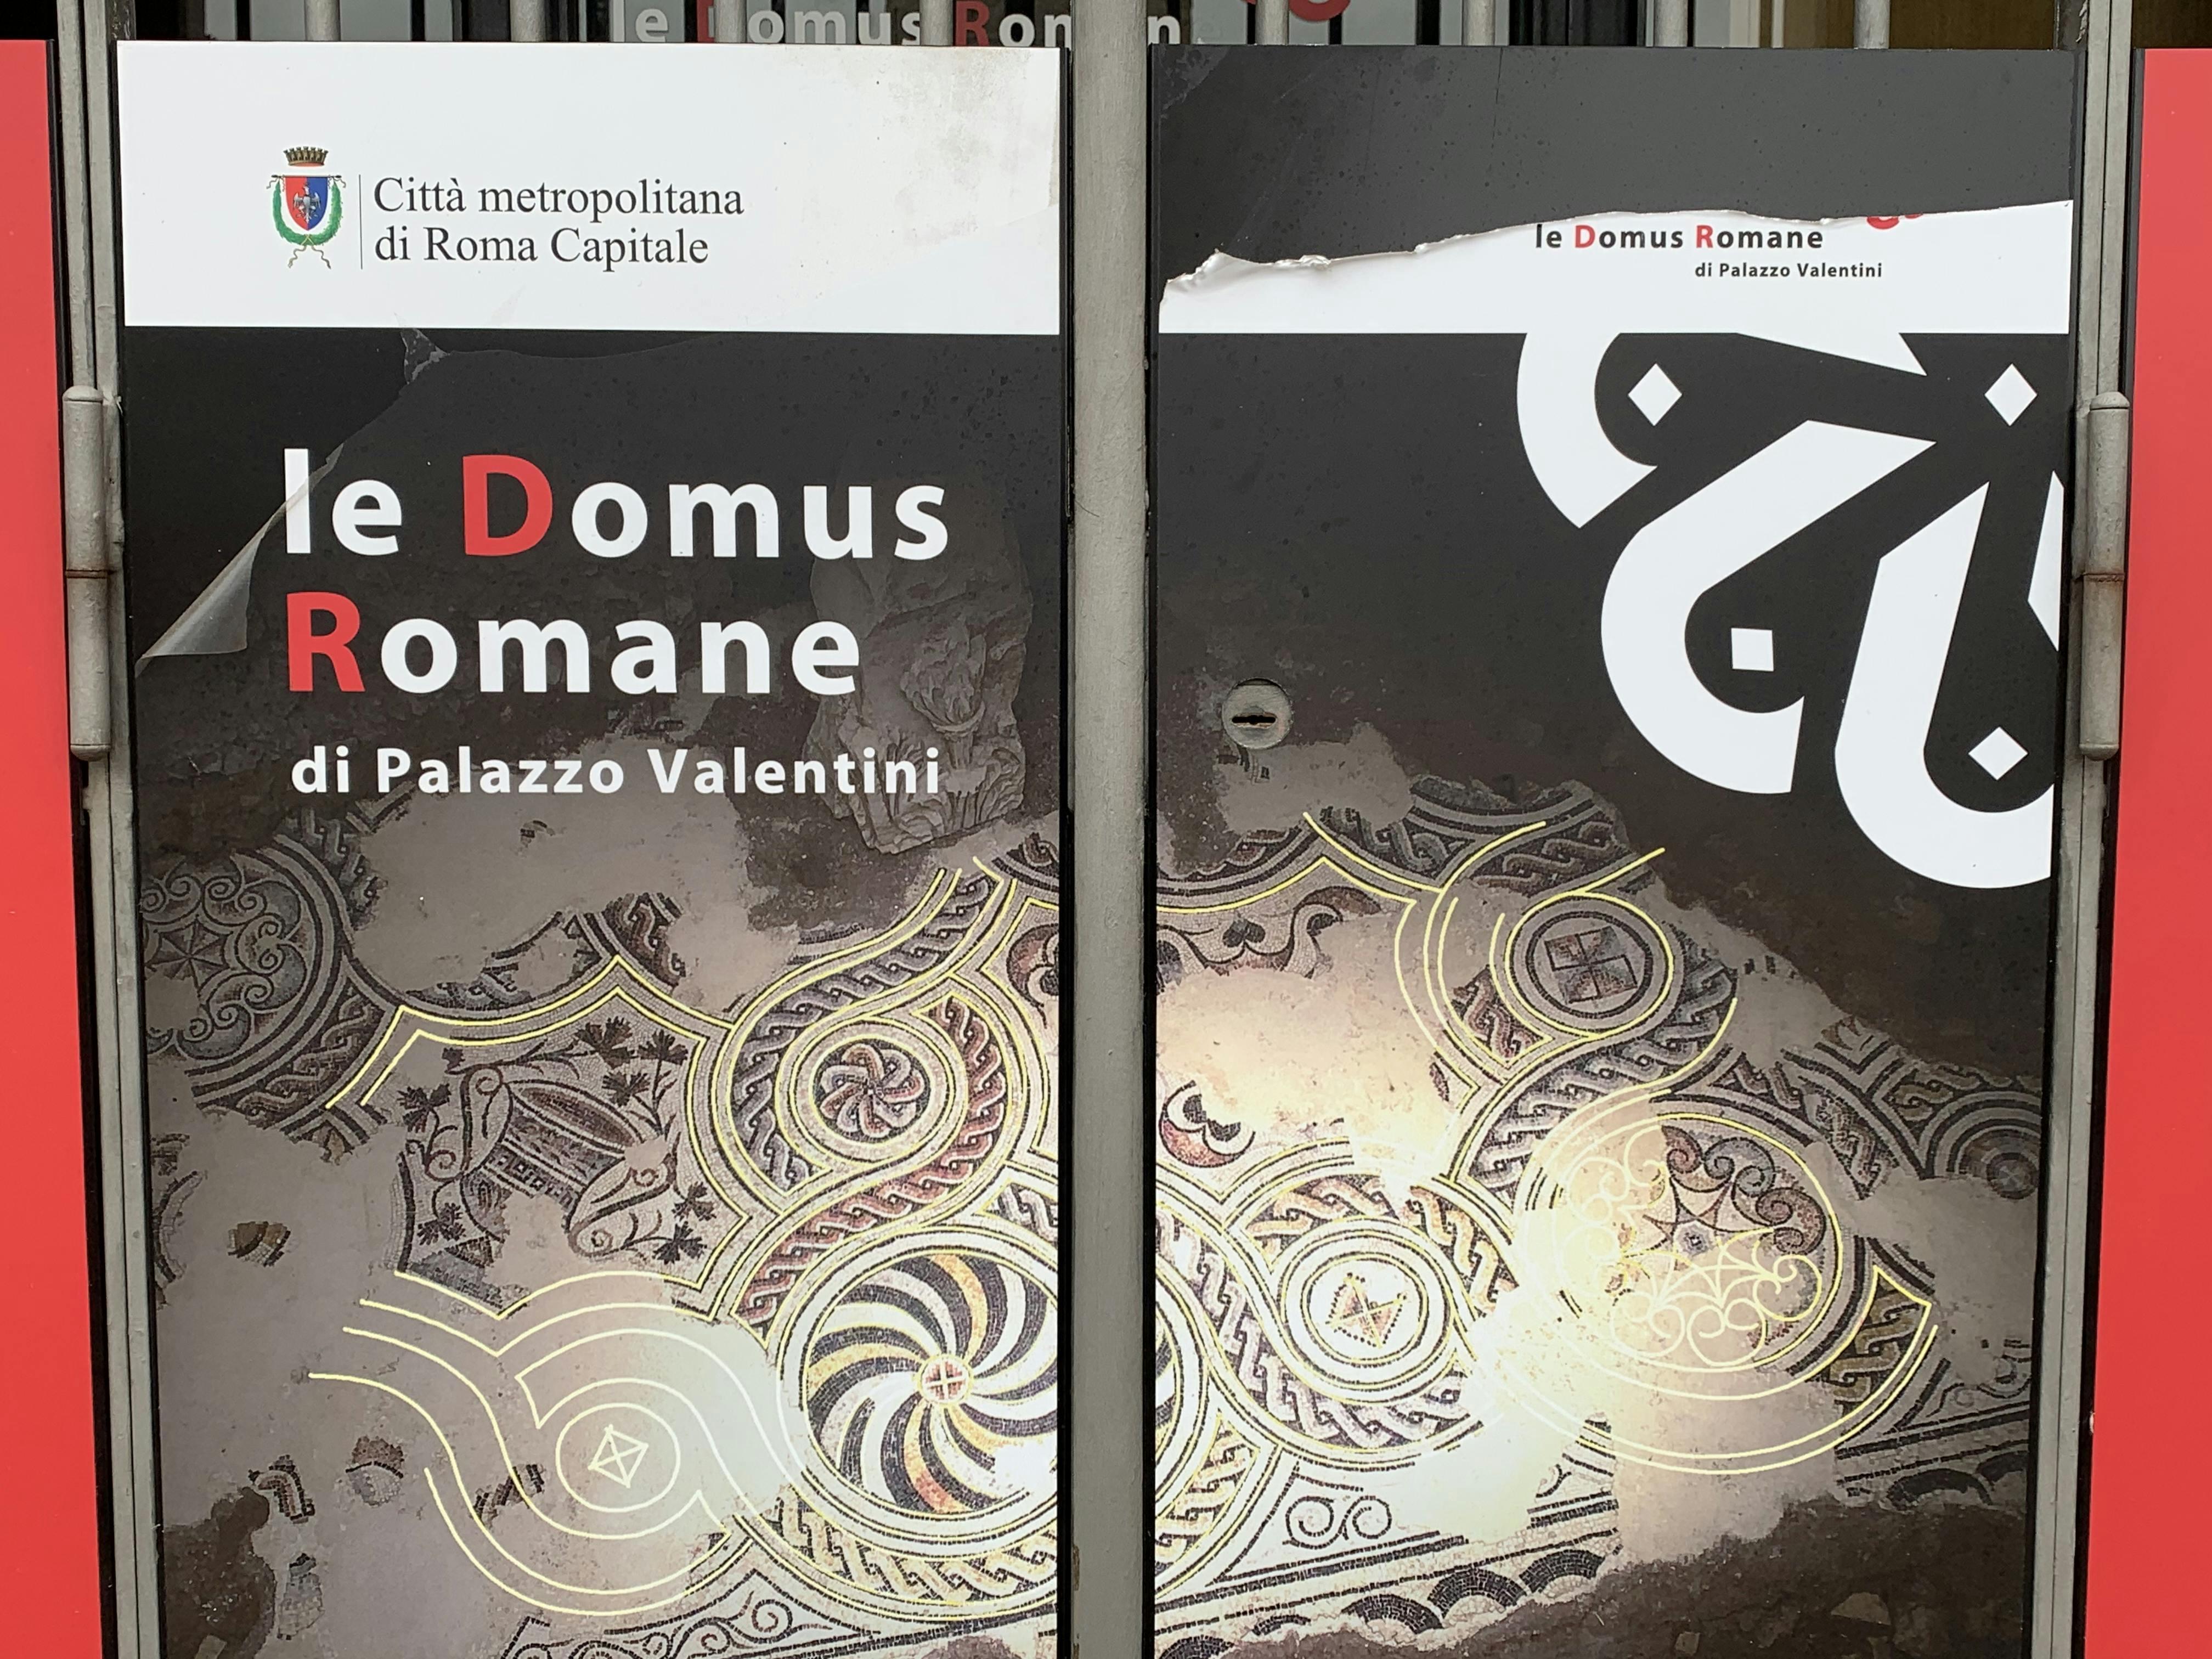 Eintrittskarten für die römische Domus des Palazzo Valentini mit Multimedia-Erlebnis